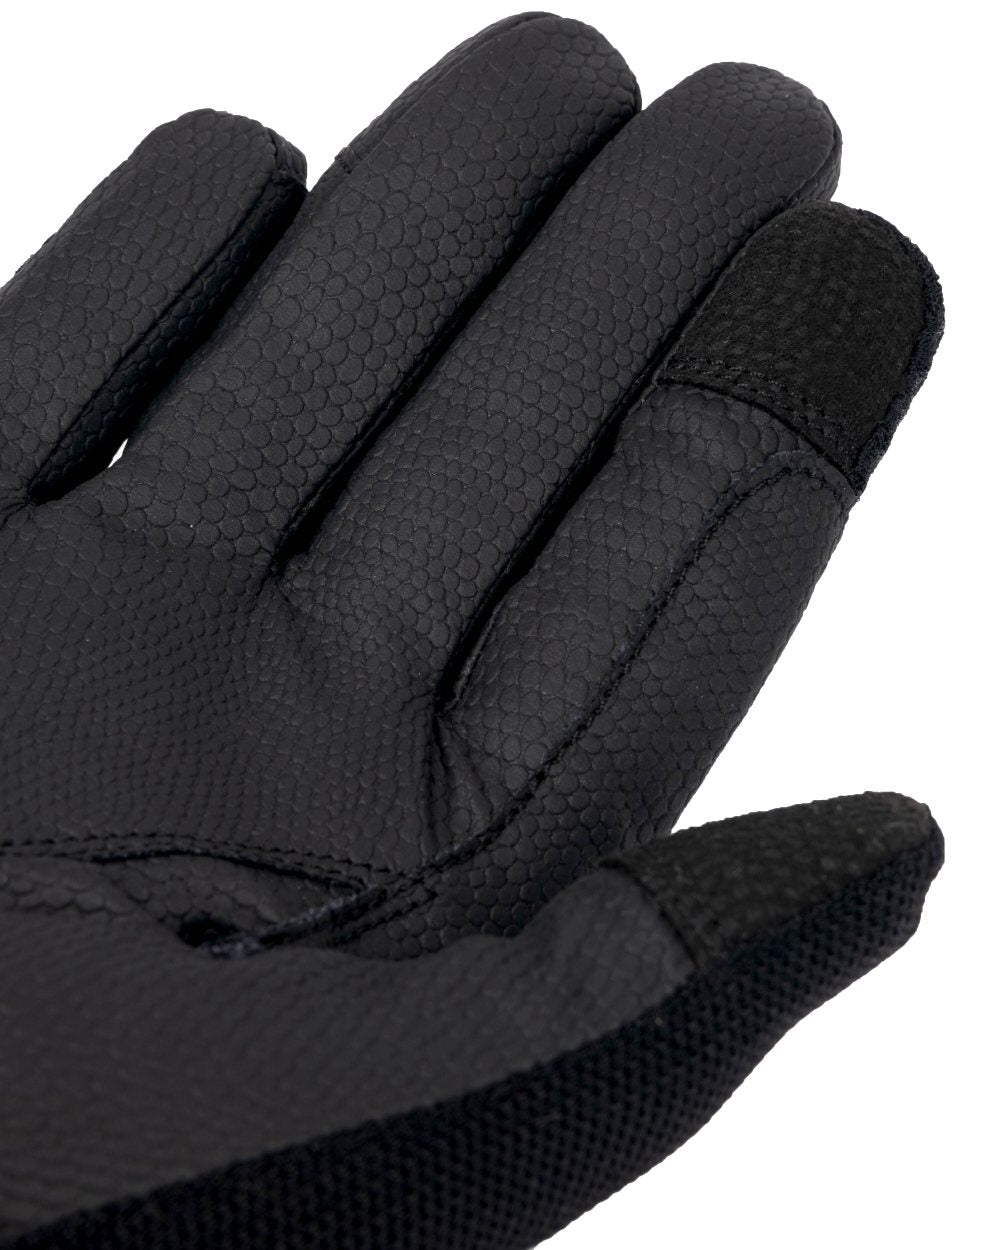 Black coloured LeMieux 3D Mesh Riding Gloves on white background 